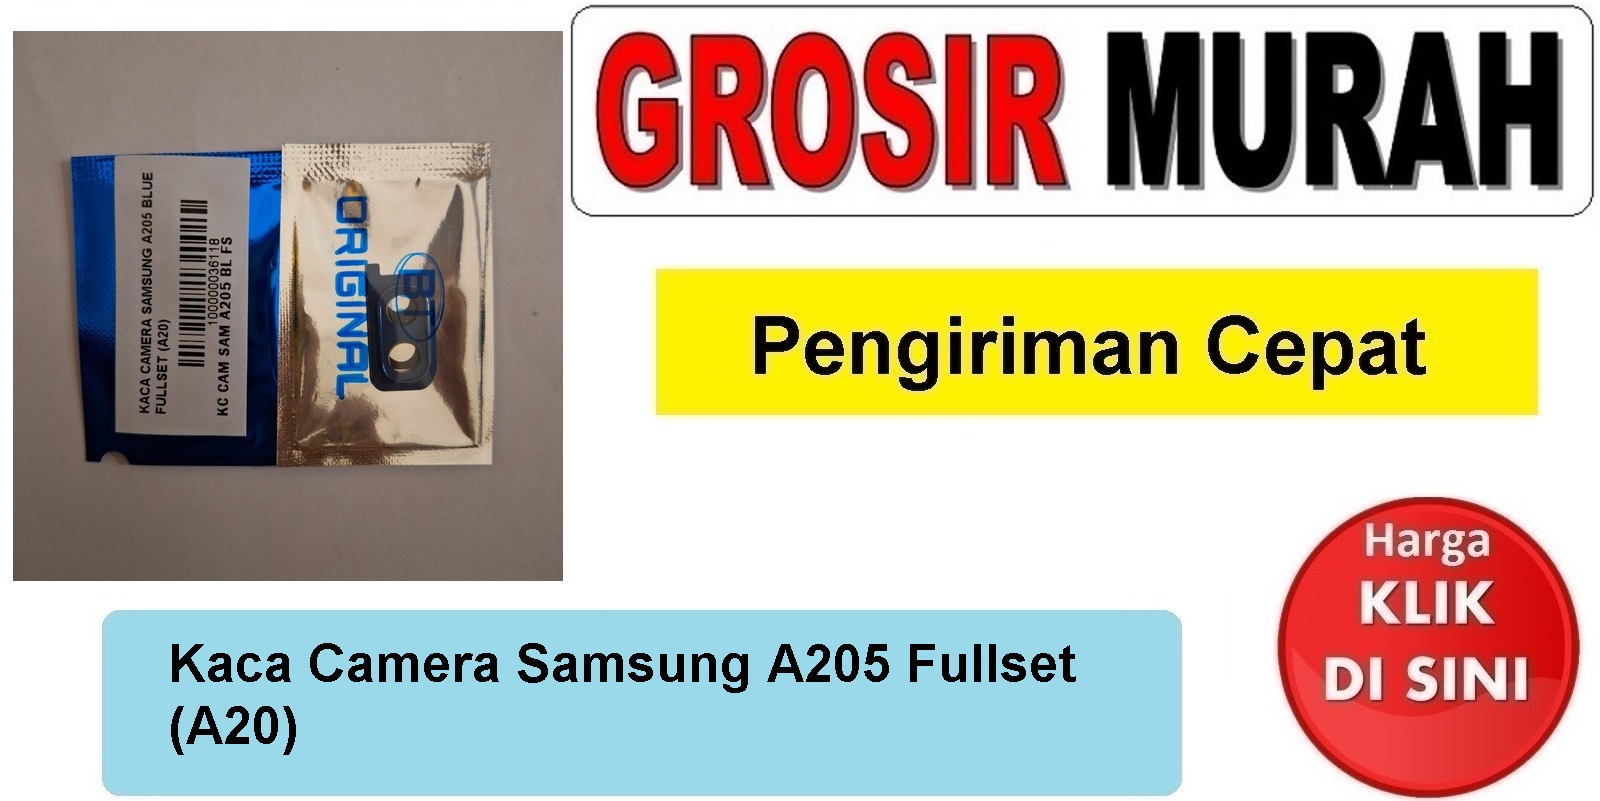 Kaca Camera Samsung A205 Fullset (A20)